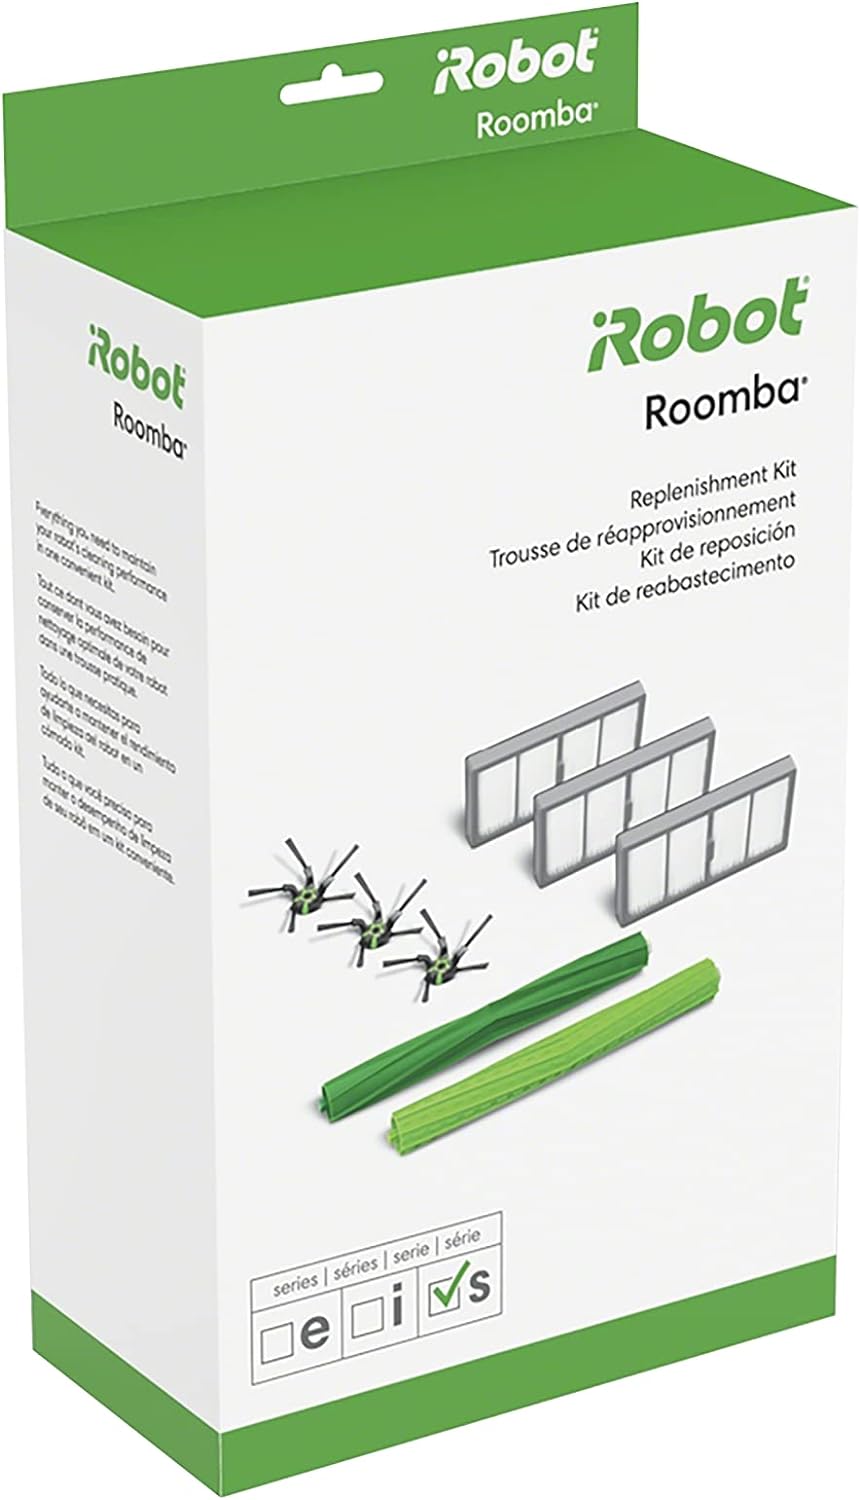 iRobot Replenishment kit for Roomba s series